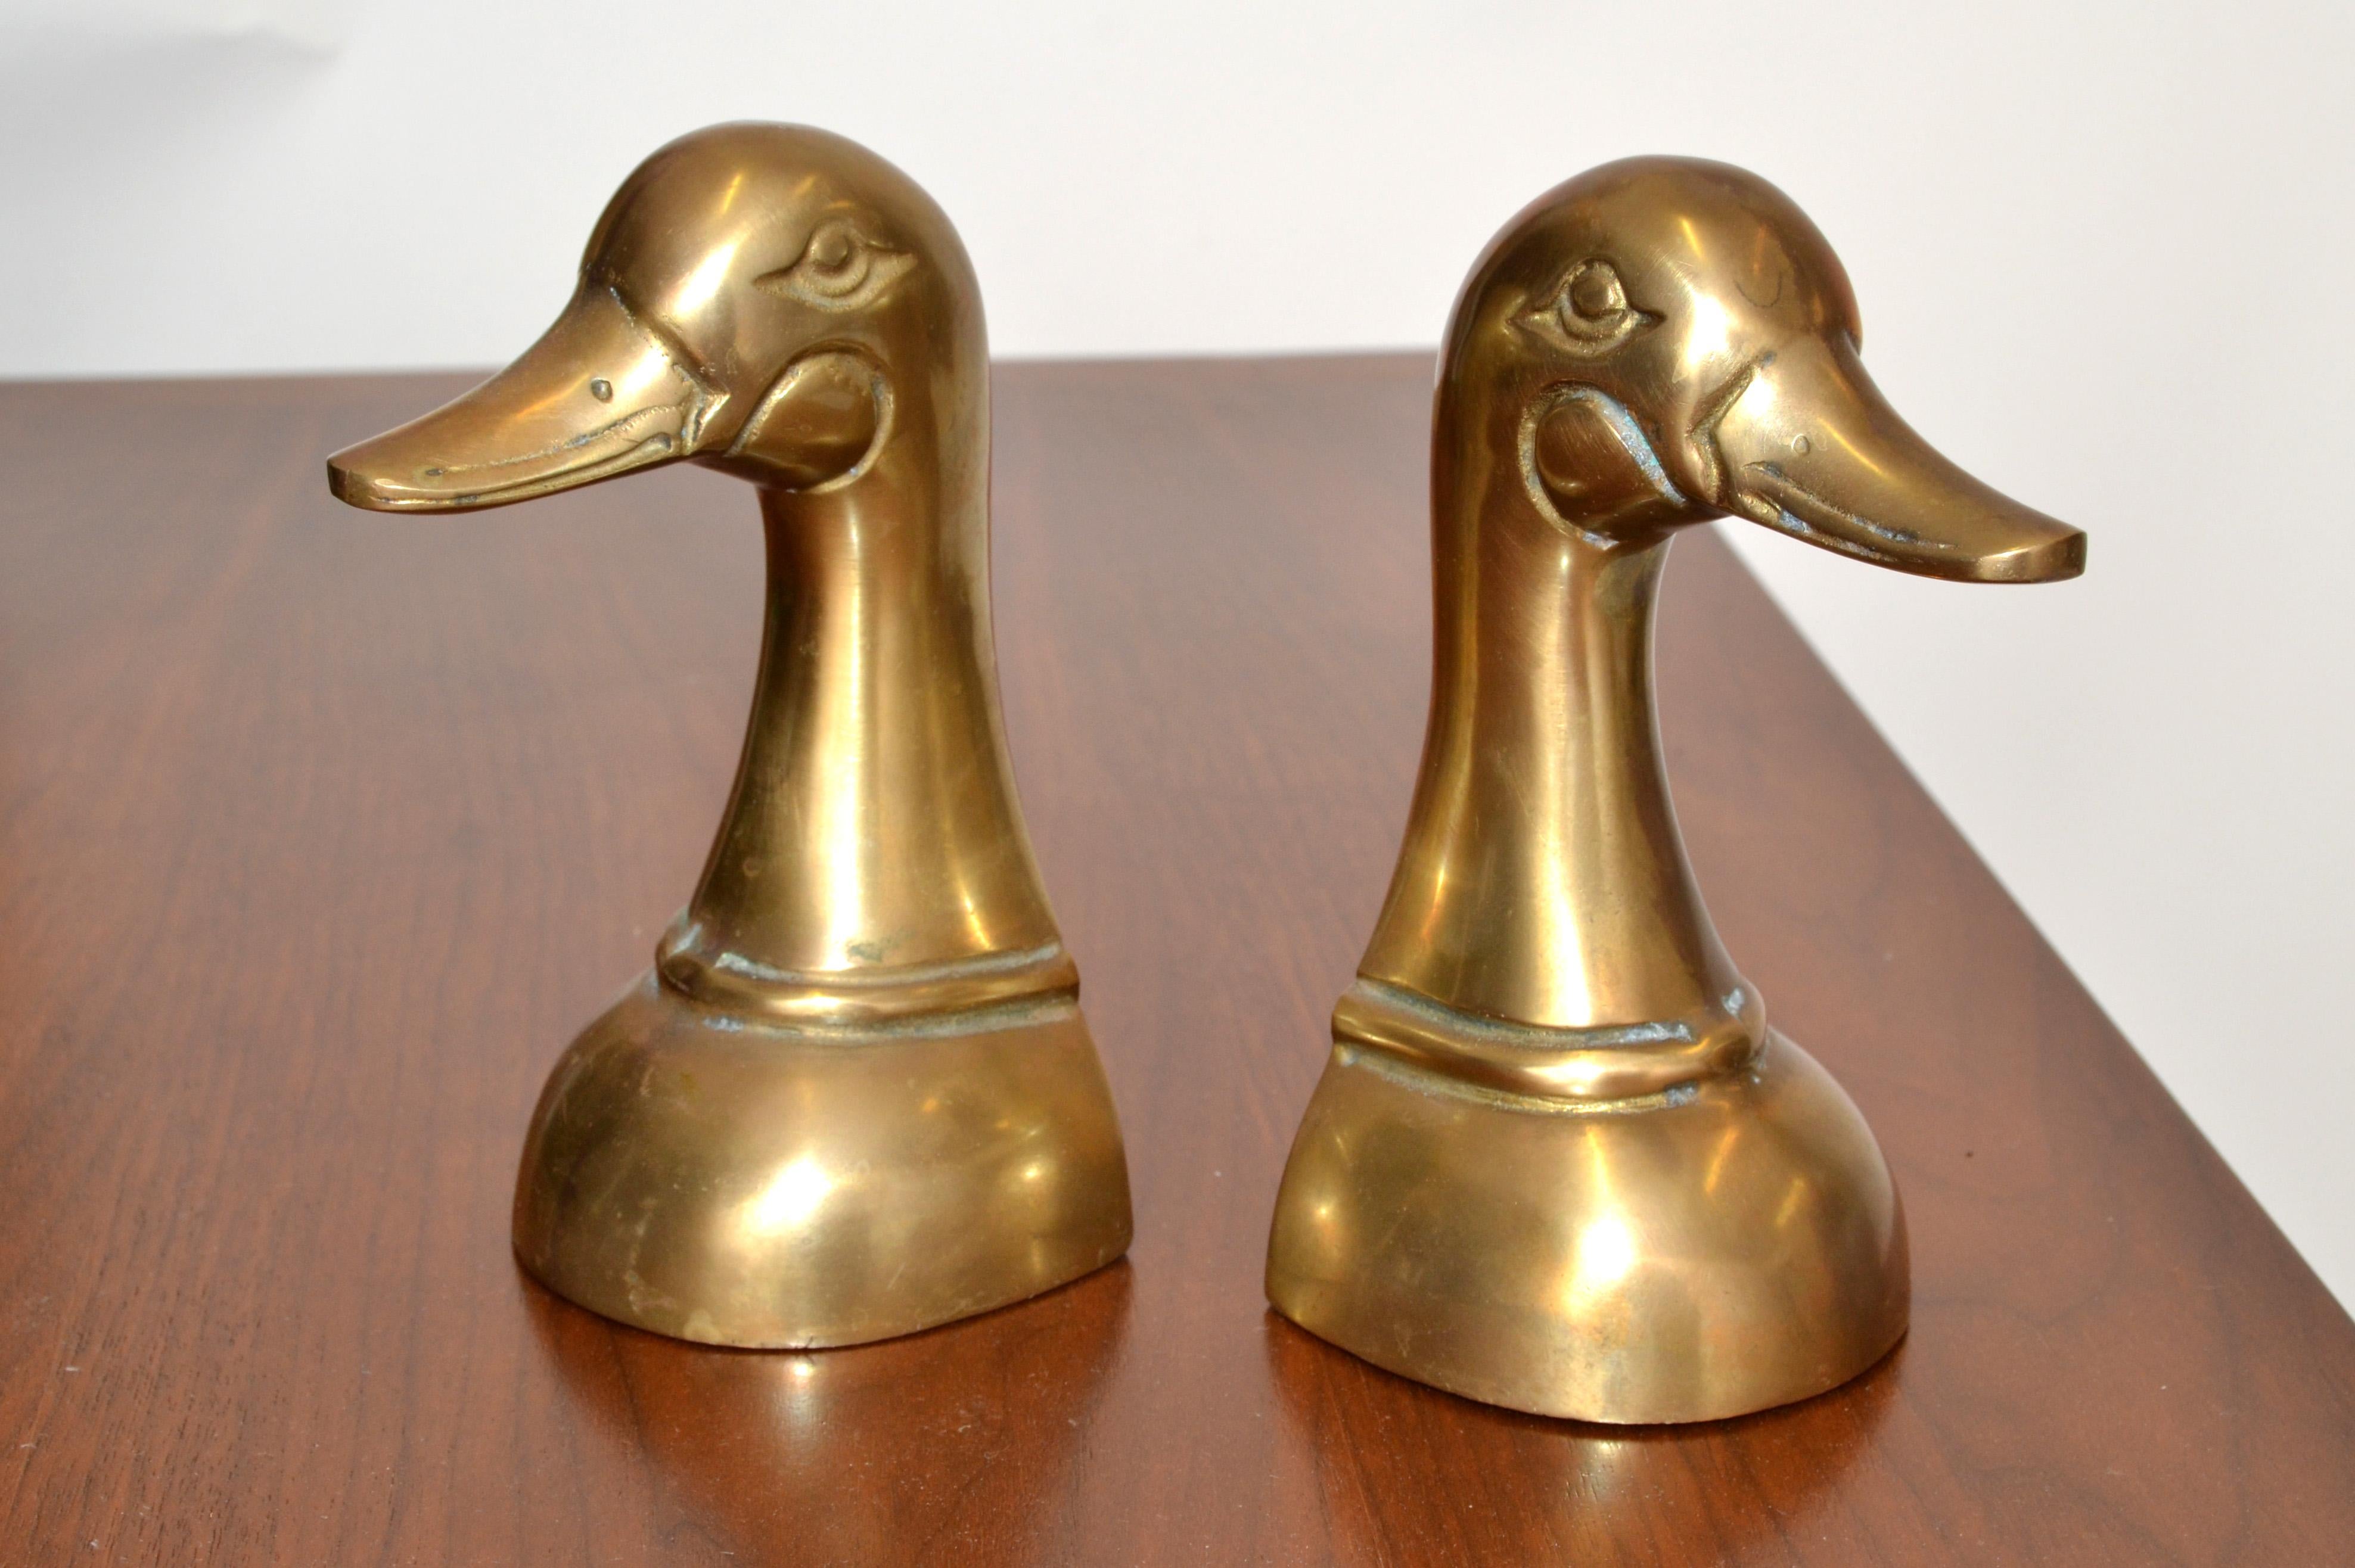 brass duck head bookends